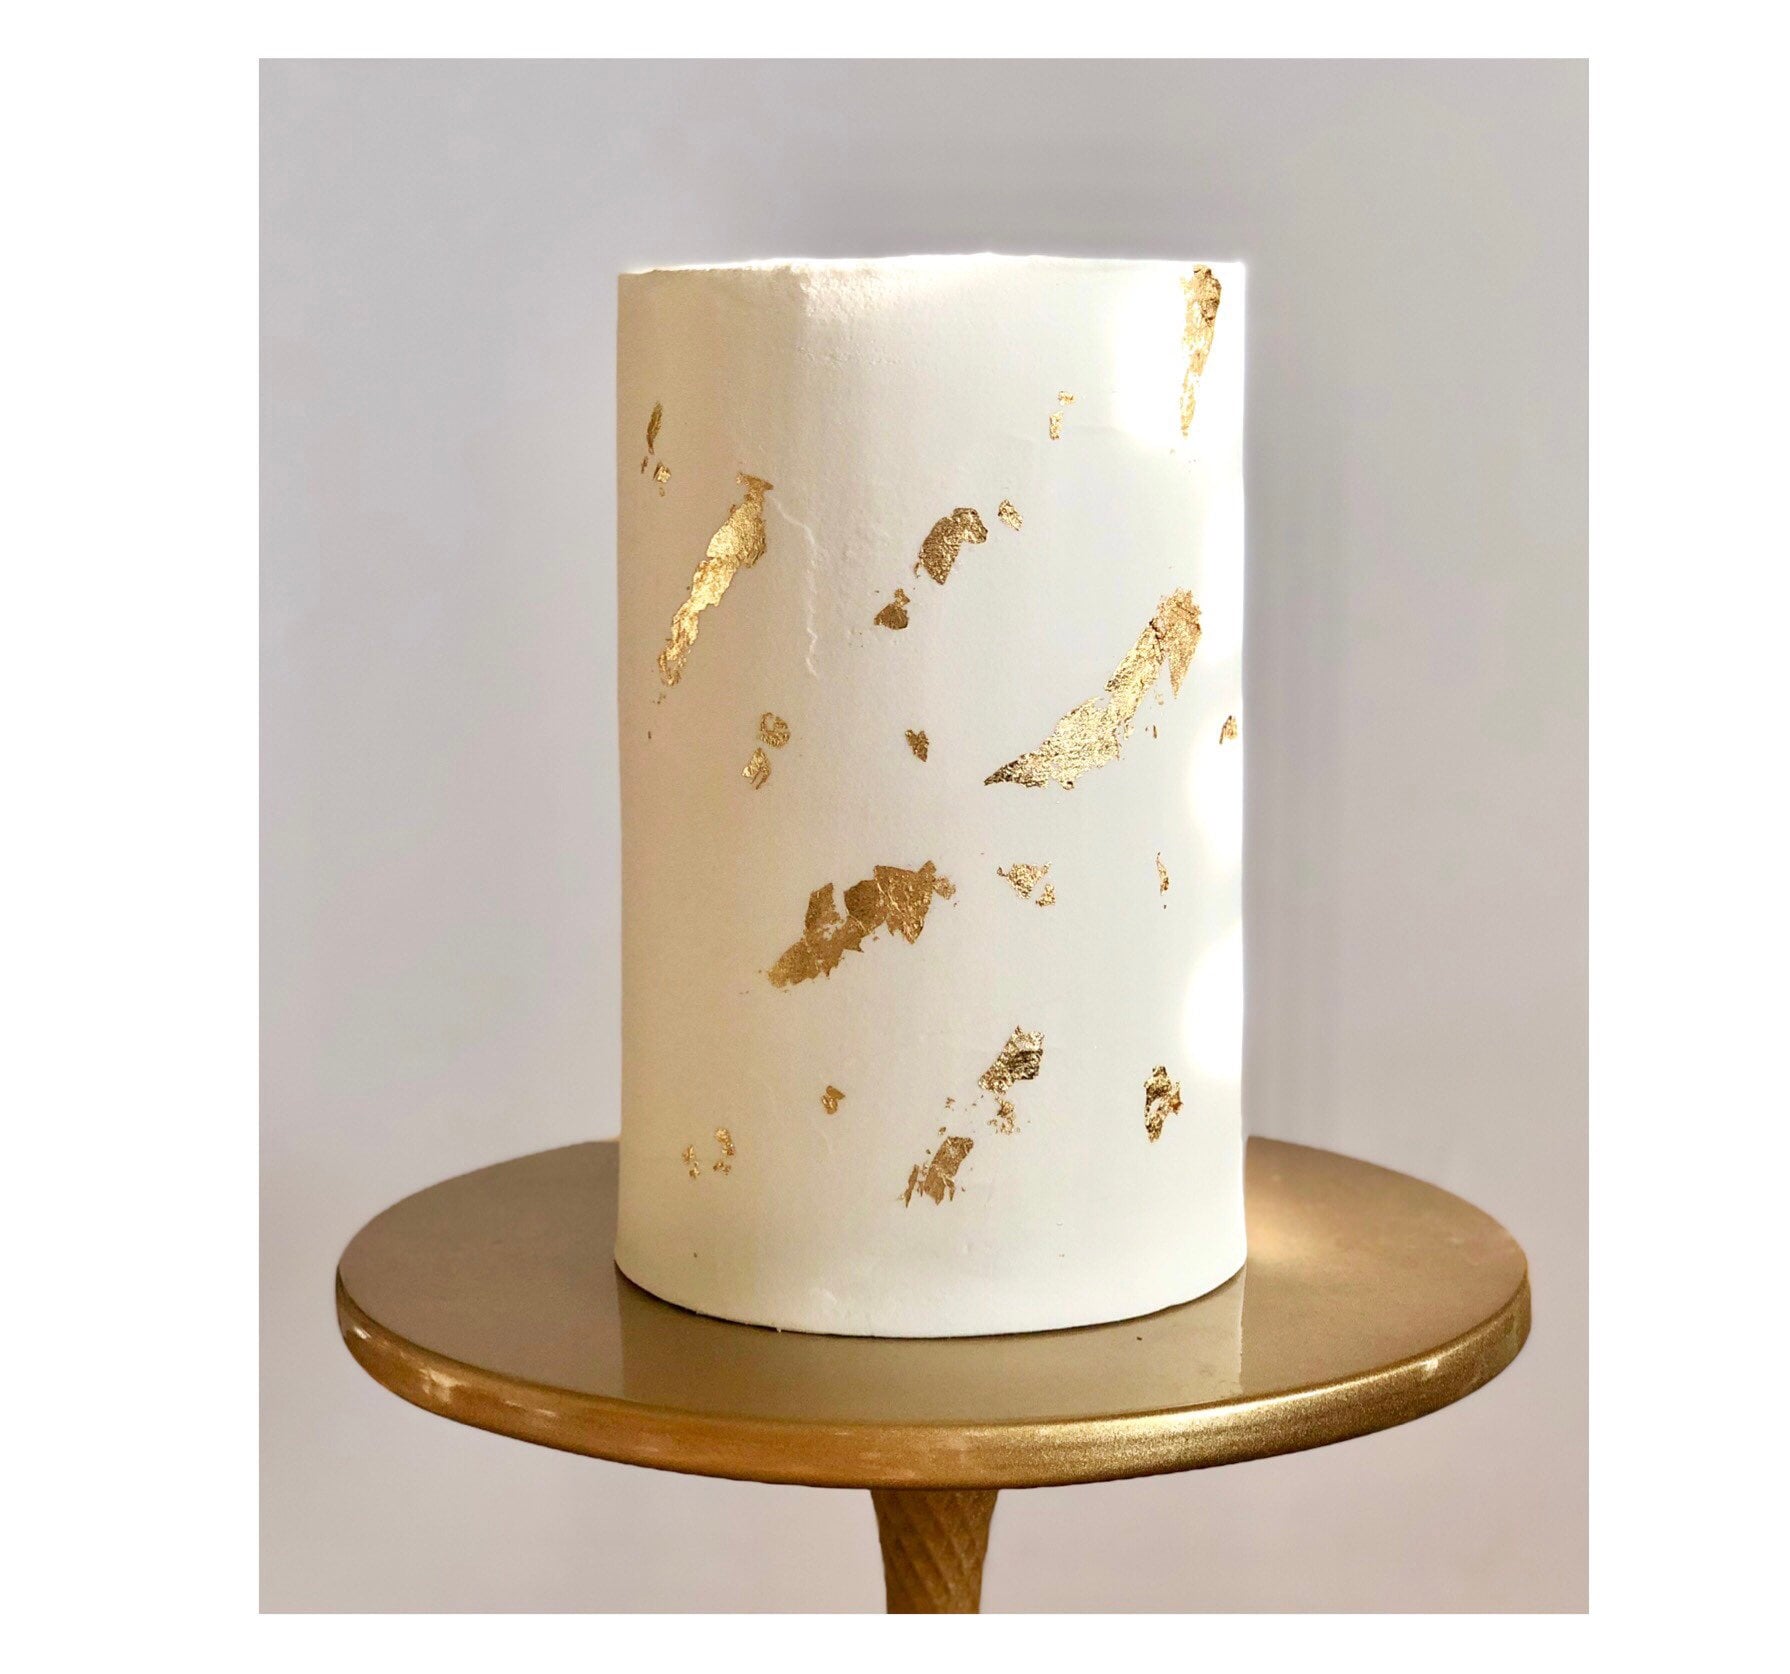 Silver Foil Cake Leaves/ Gold Foil Cake Leaves/ Small Foil Leaves/  Anniversary Cake Topper